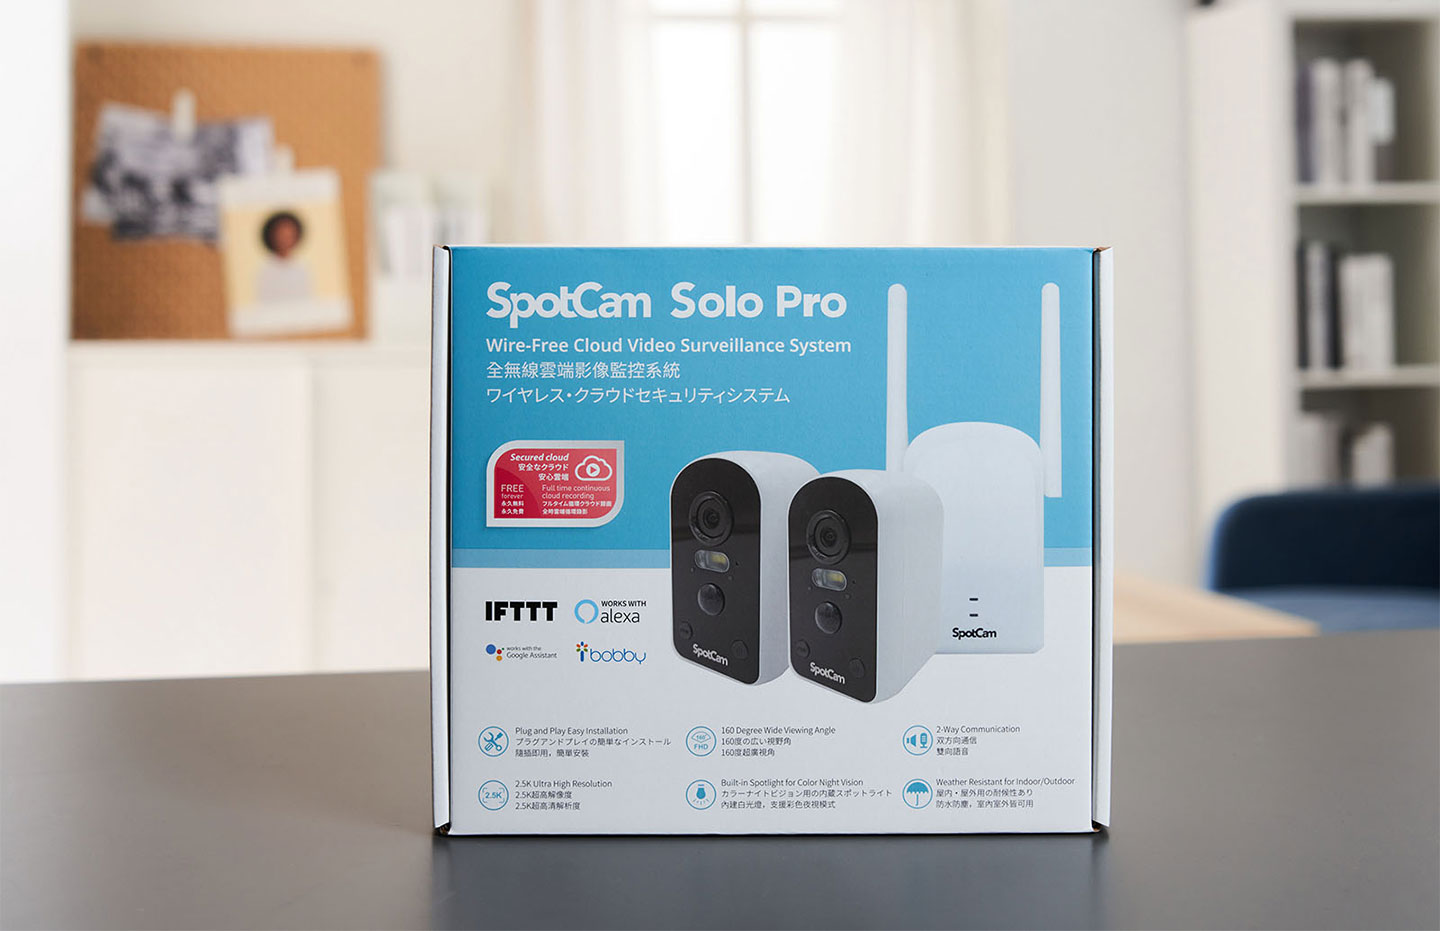 SpotCam Solo Pro 全無線雲端影像監控系統的外箱採用藍、白雙色配，面可以看到攝影機與基站的產品照片，並標示了主打的功能特色。 ▲ 次開箱的 SpotCam Solo Pro 為四鏡版本，原廠另外也有推出雙鏡版本可以選擇。